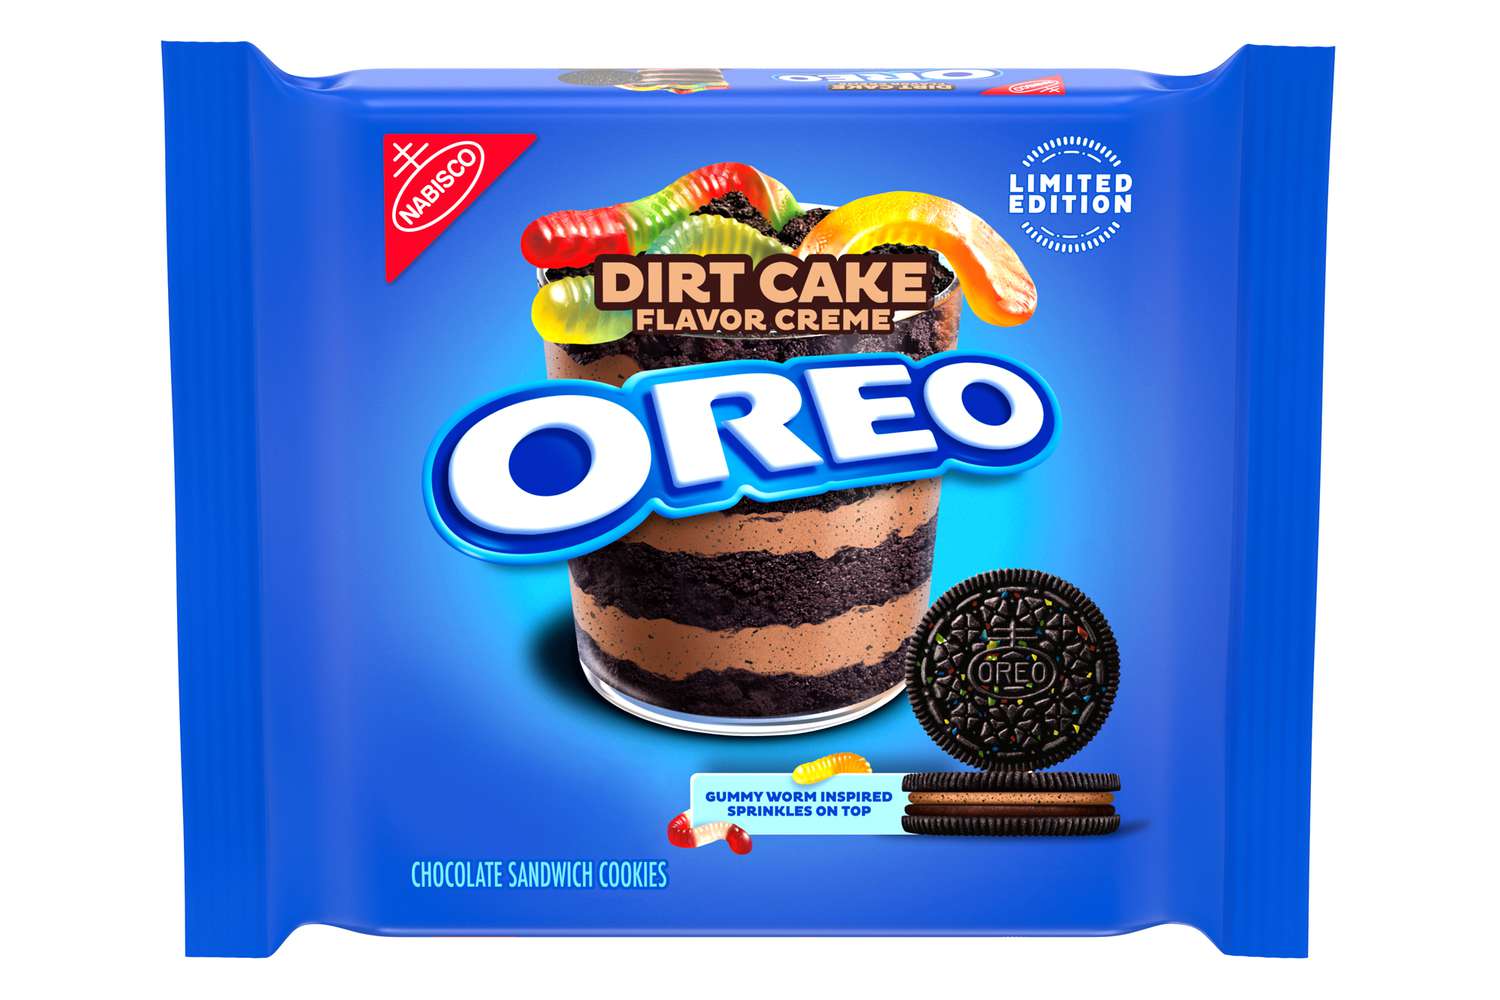 Oreo Dirt Cake 303g (USA)